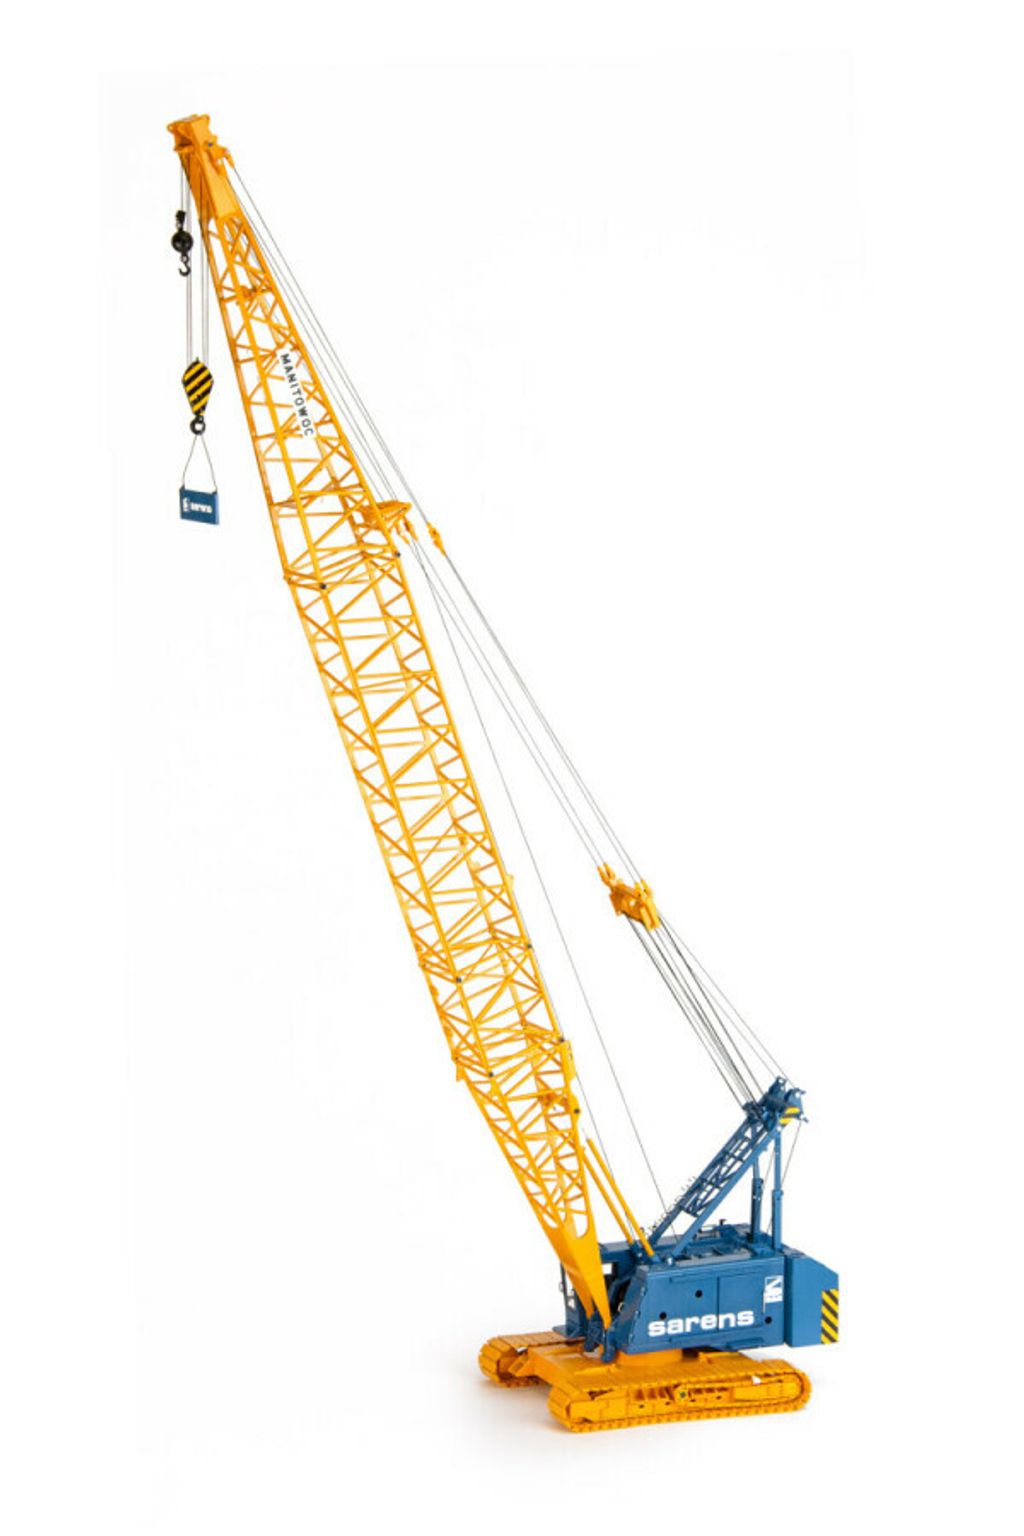 sarens-manitowoc-4100-crawler-crane